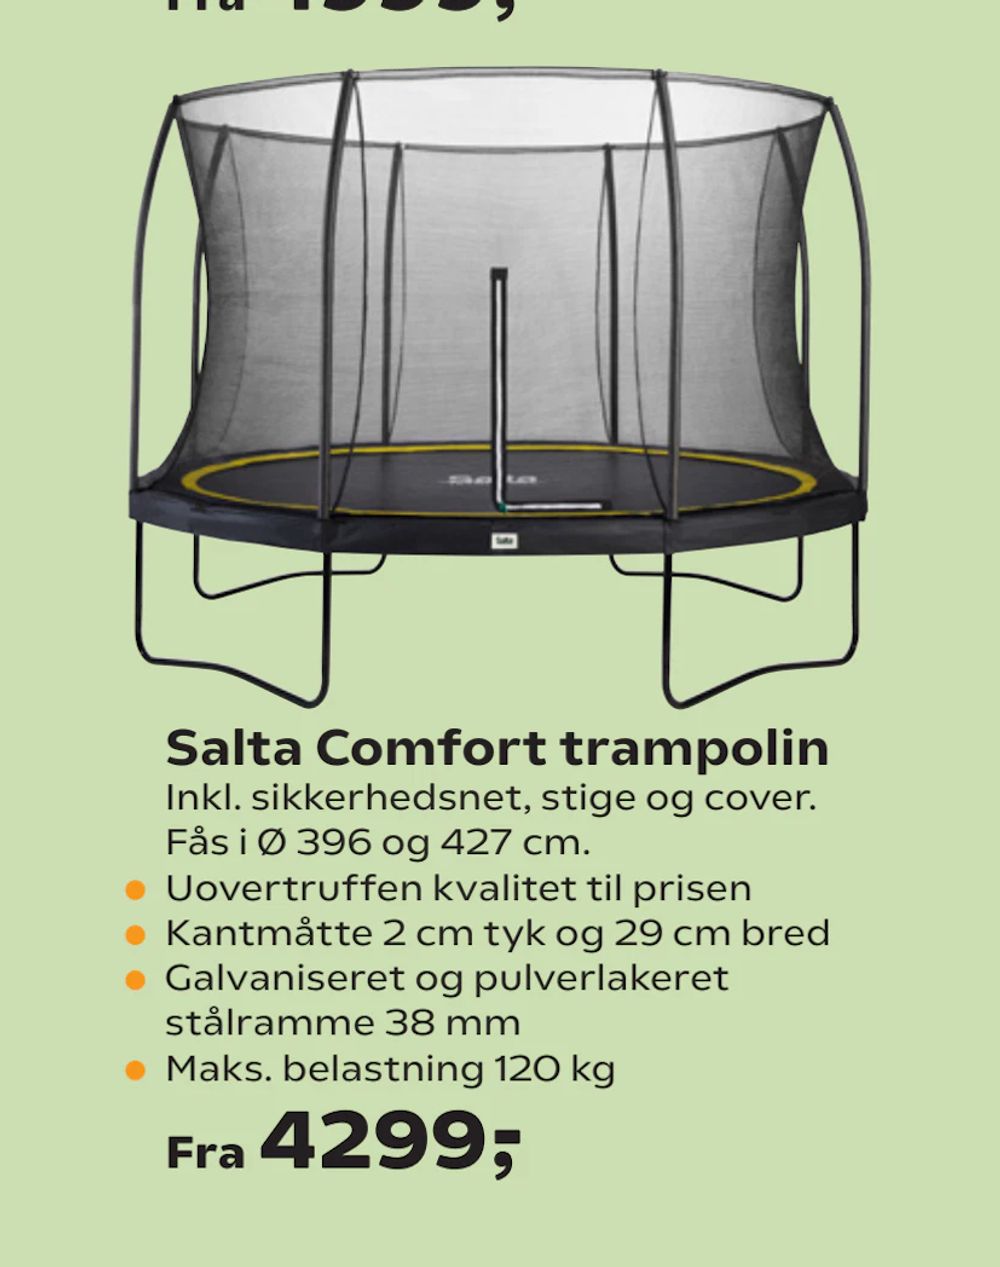 Tilbud på Salta Comfort trampolin fra Coop.dk til 4.299 kr.